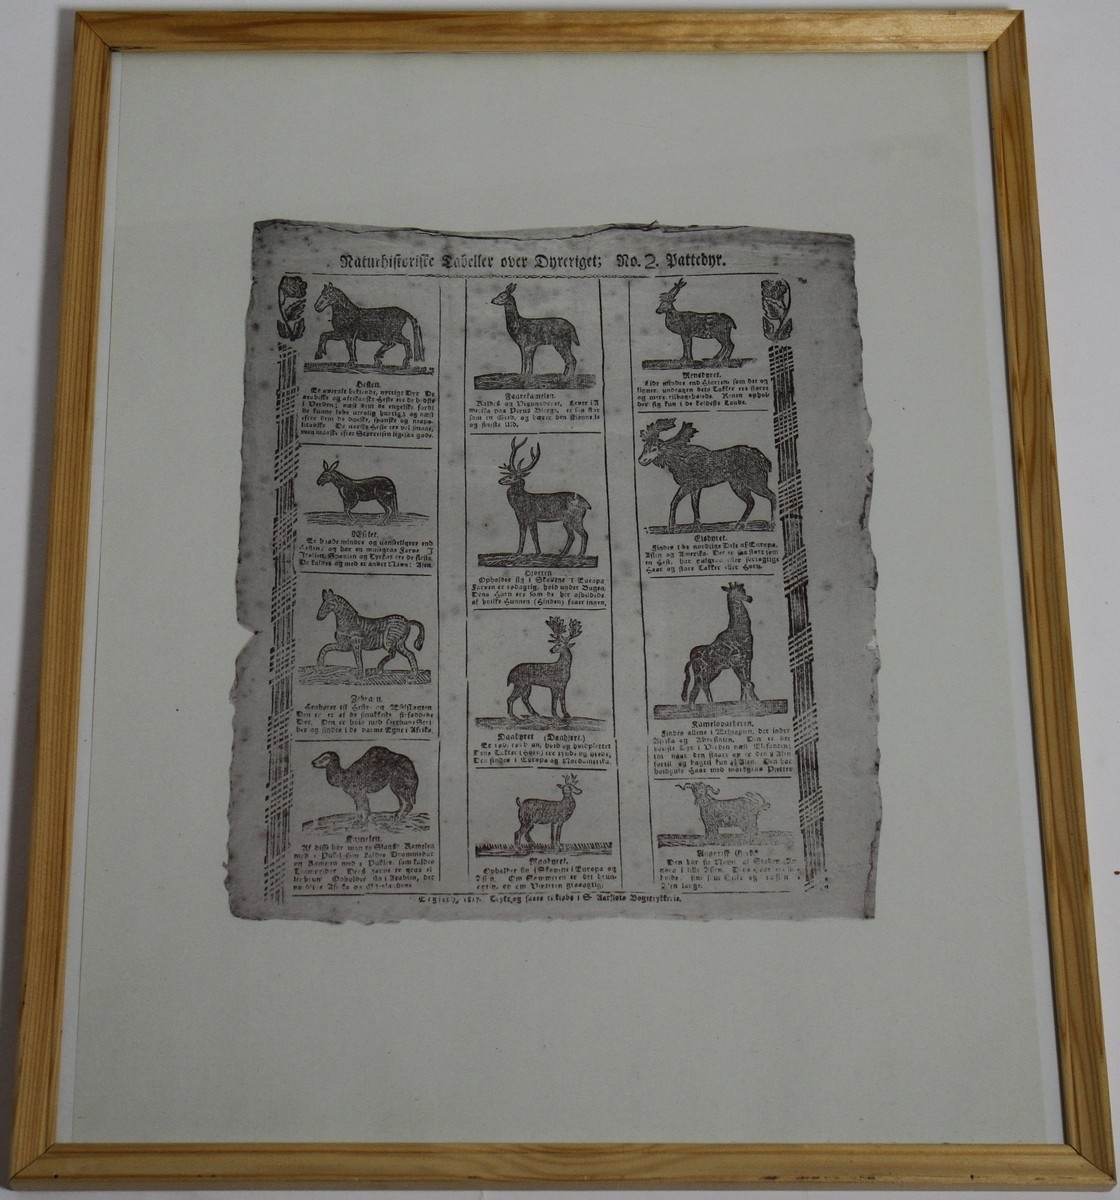 Naturhistorisk tabell med informasjon om 12 ulike pattedyr. Ti av desse er: hesten, eselet, zebraen, kamelen, hjorten, dådyret, rådyret, reinsdyret, elgdyret, og sjiraffen. Dei to andre er vanskelege å lese. Teksta er trykt med gotisk skrift i Sivert Aarflots Boktrykkeri. Tabellen er datert 1817. Sivert Aarflot (1759-1817) var ein lærar, gardbrukar, lensmann, boktrykkar og bladutgjevar i Volda på Sunnmøre. Han var den fyrste som opna boktrykkeri utanfor dei store byane i 1809. Tabellen med informasjon om pattedyra er i glas og ramme.

Kjelde:
https://nn.wikipedia.org/wiki/Sivert_Aarflot (Lesedato: 03.03.2020)